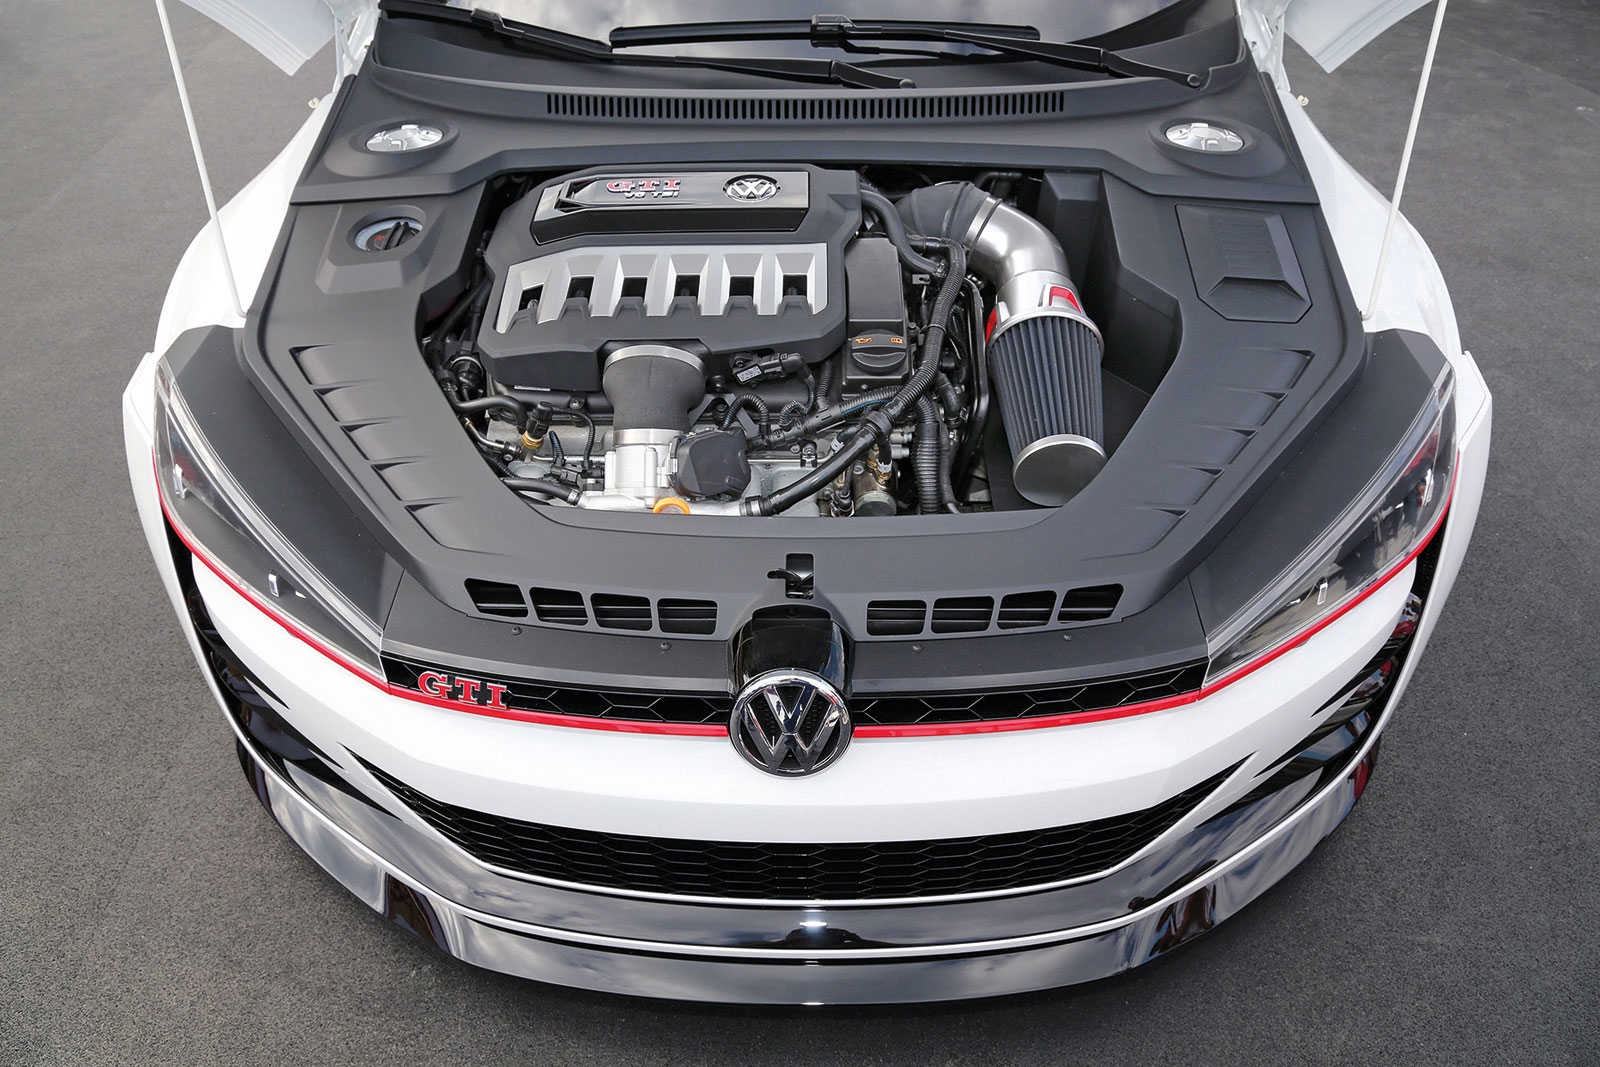 Volkswagen Design Vision GTI, 2013 - Engine